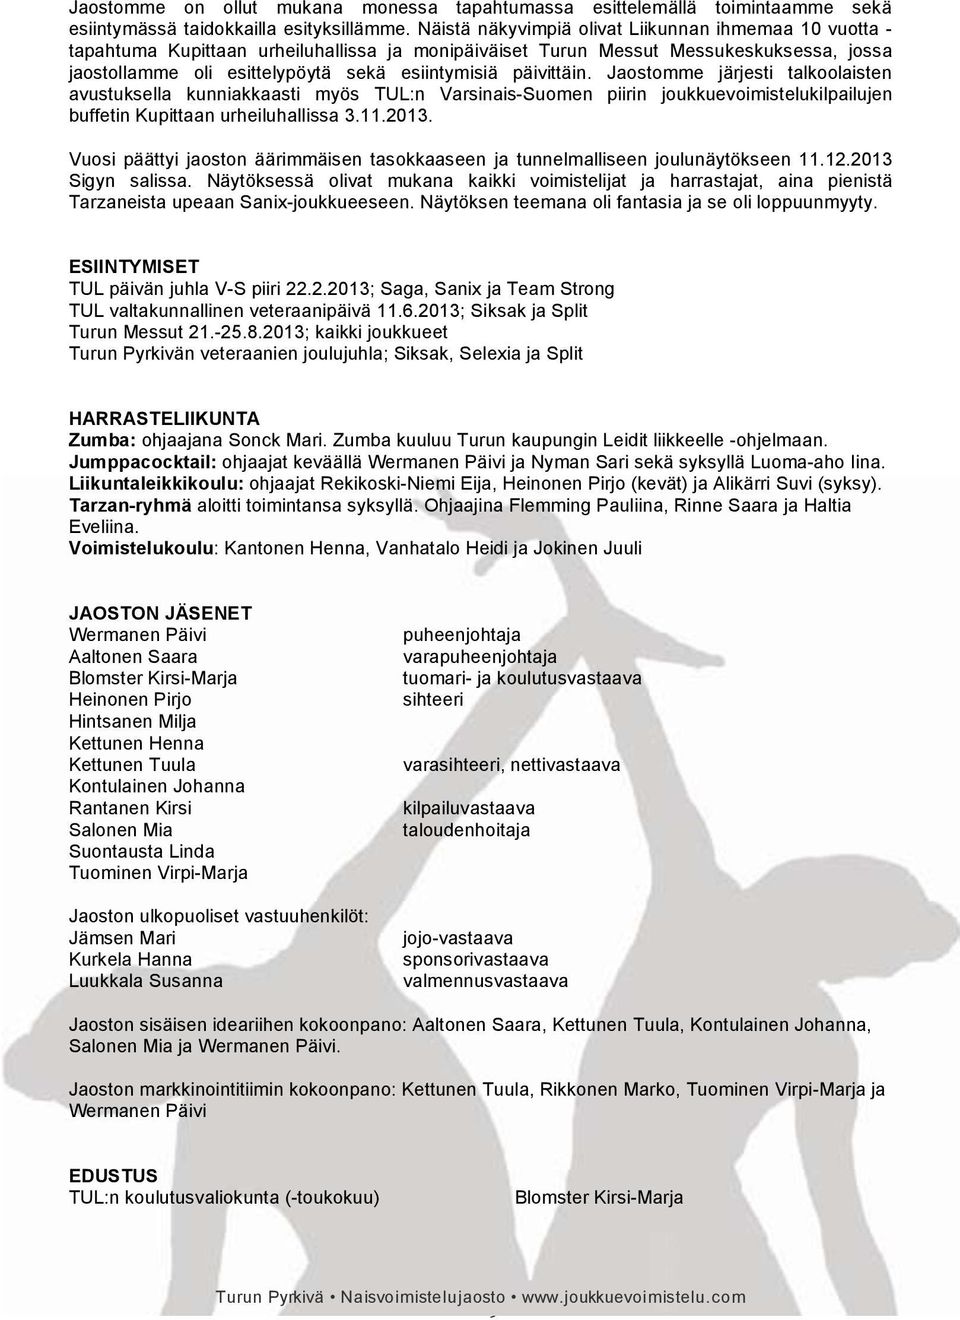 päivittäin. Jaostomme järjesti talkoolaisten avustuksella kunniakkaasti myös TUL:n Varsinais-Suomen piirin joukkuevoimistelukilpailujen buffetin Kupittaan urheiluhallissa 3.11.2013.